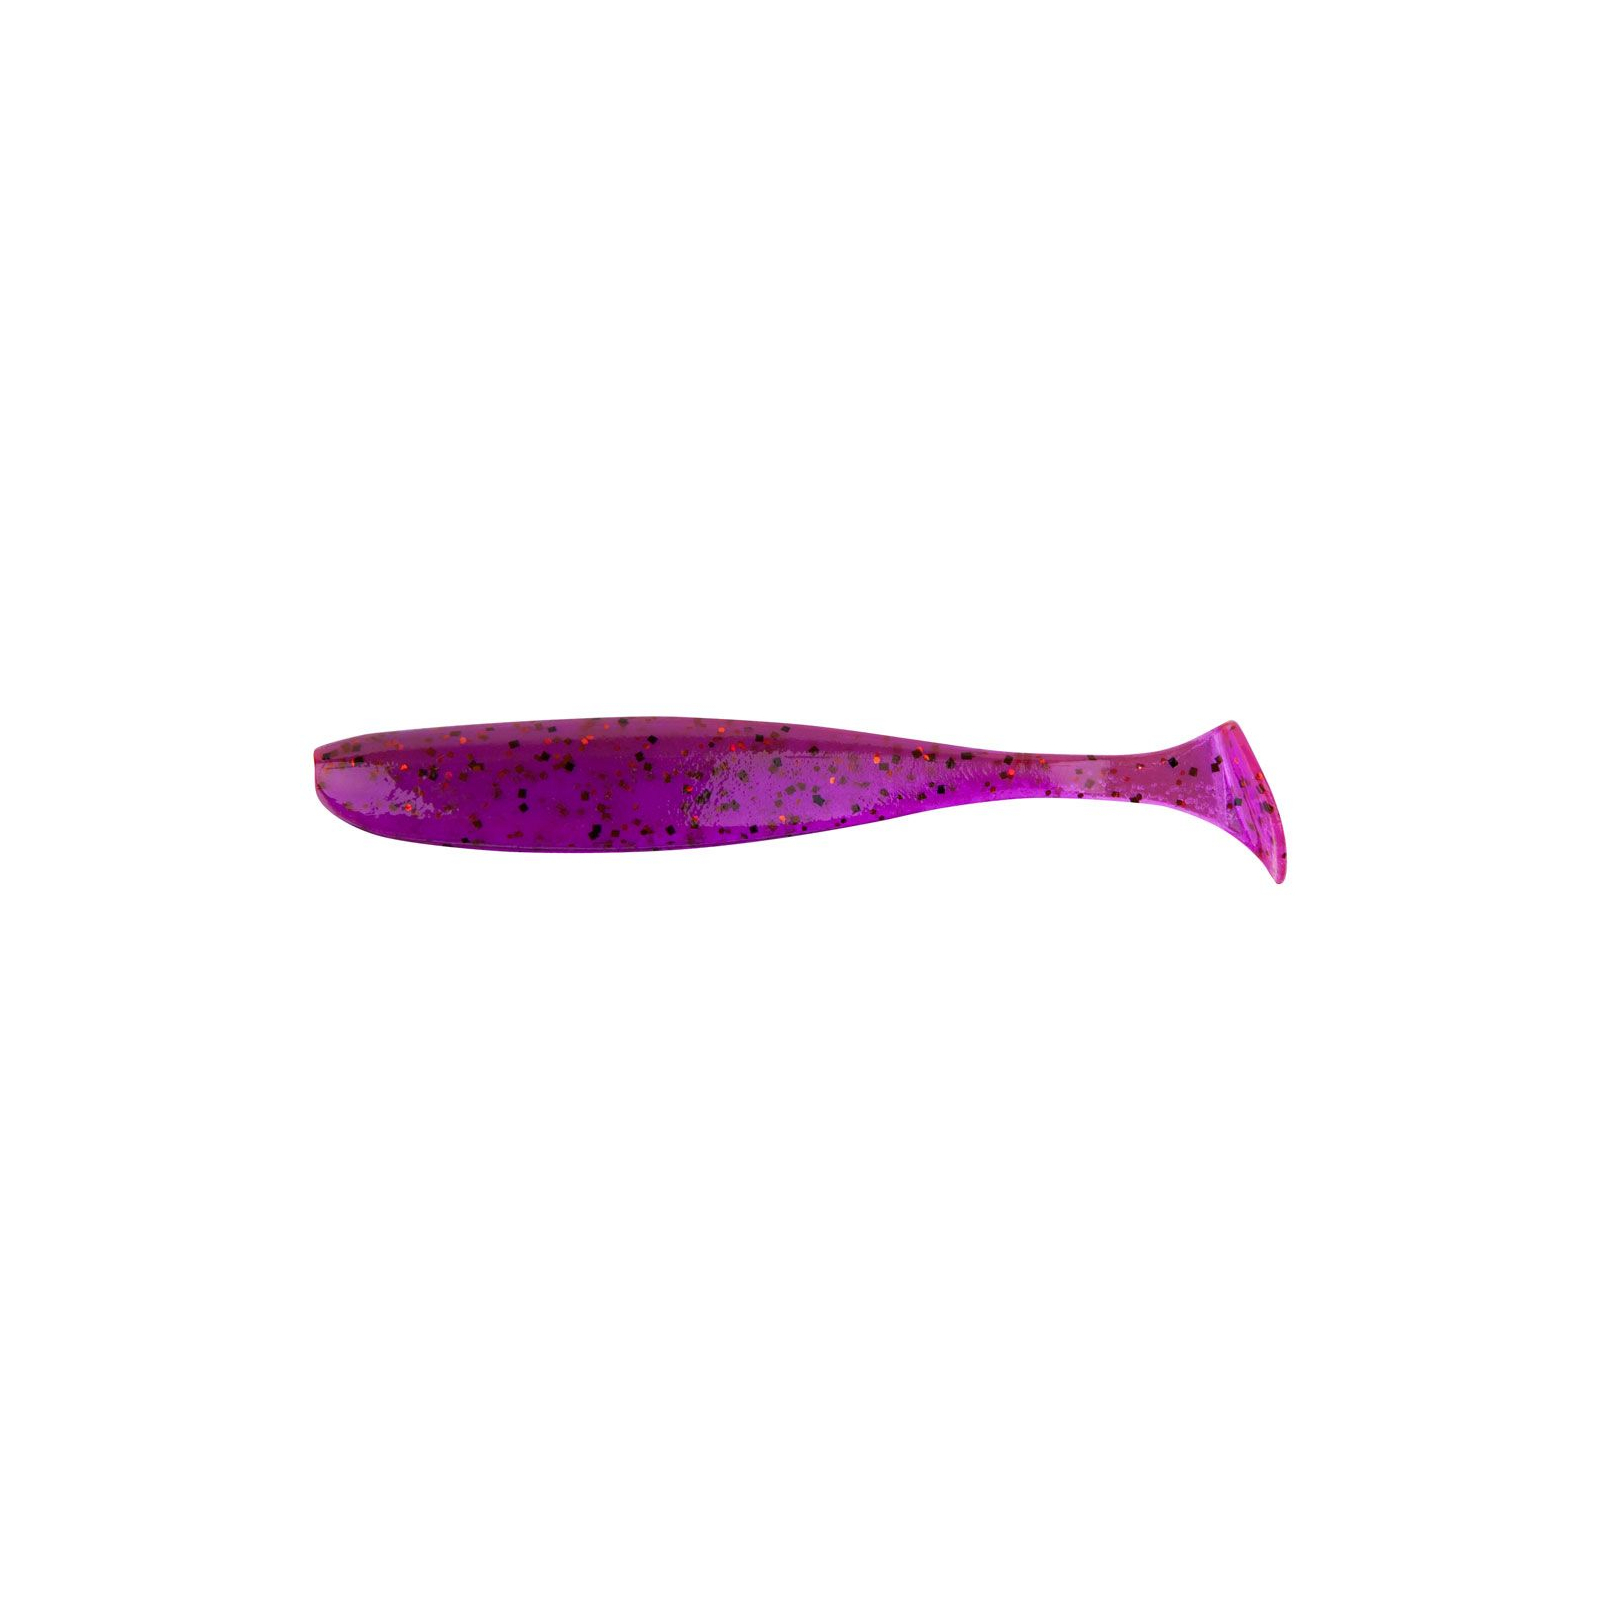 Силикон рыболовный Keitech Easy Shiner 2" (12 шт/упак) ц:pal#13 mistic spice (1551.07.70)